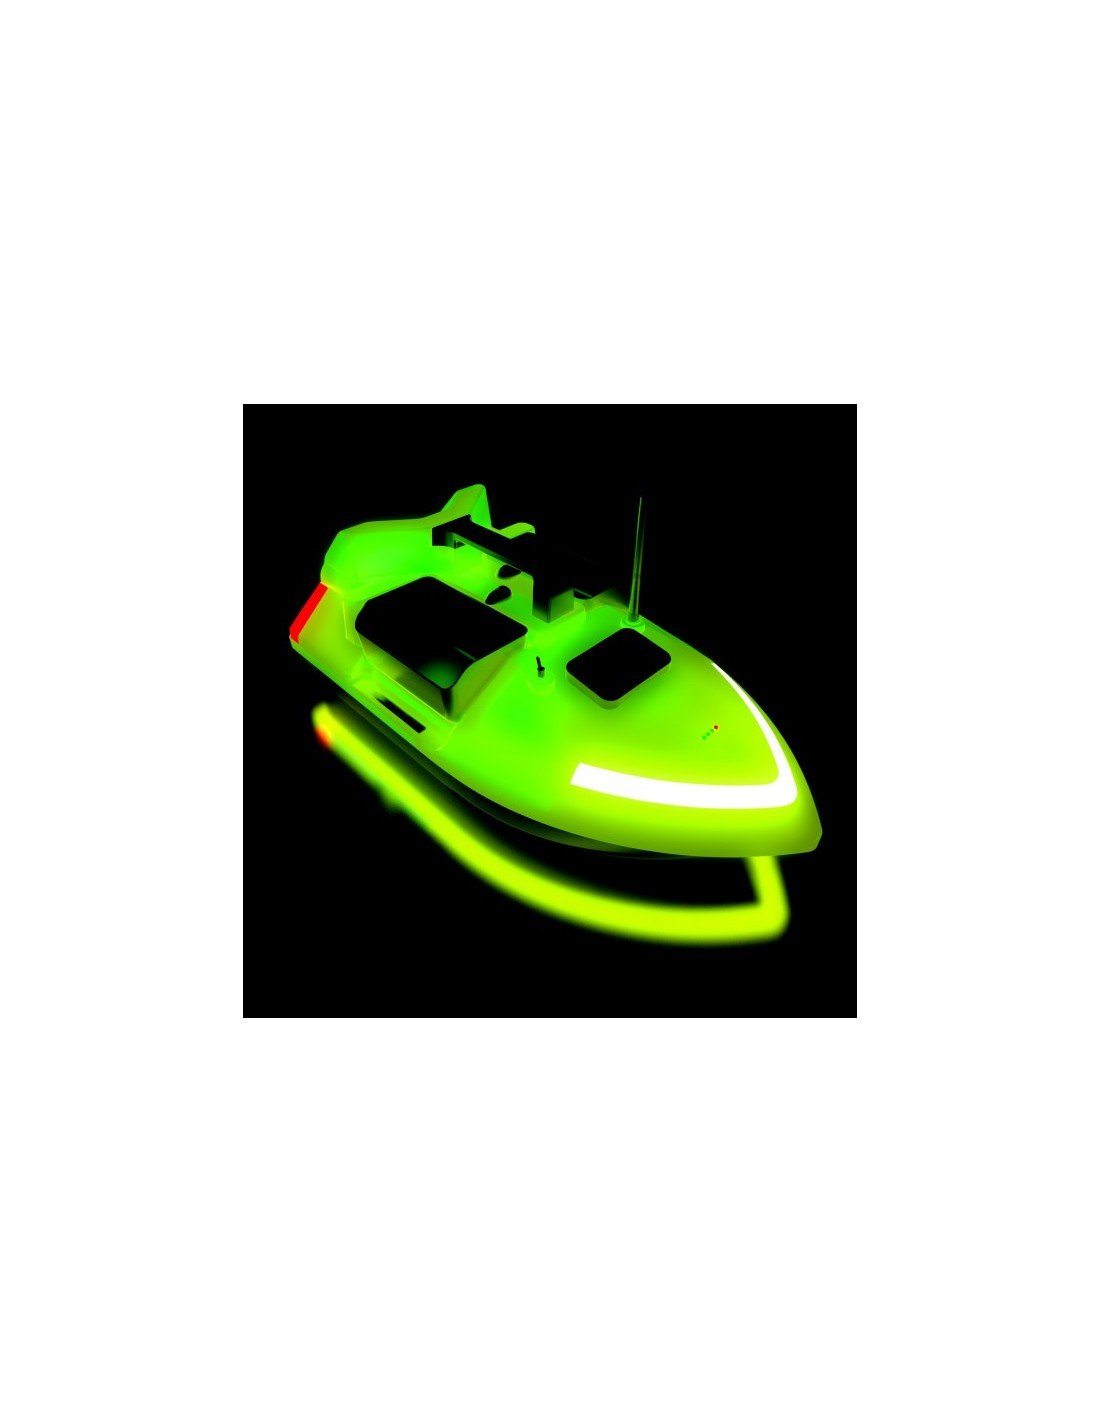 Лодка за захранка Flytec V020 FLUORO GPS - 40 точки 500м